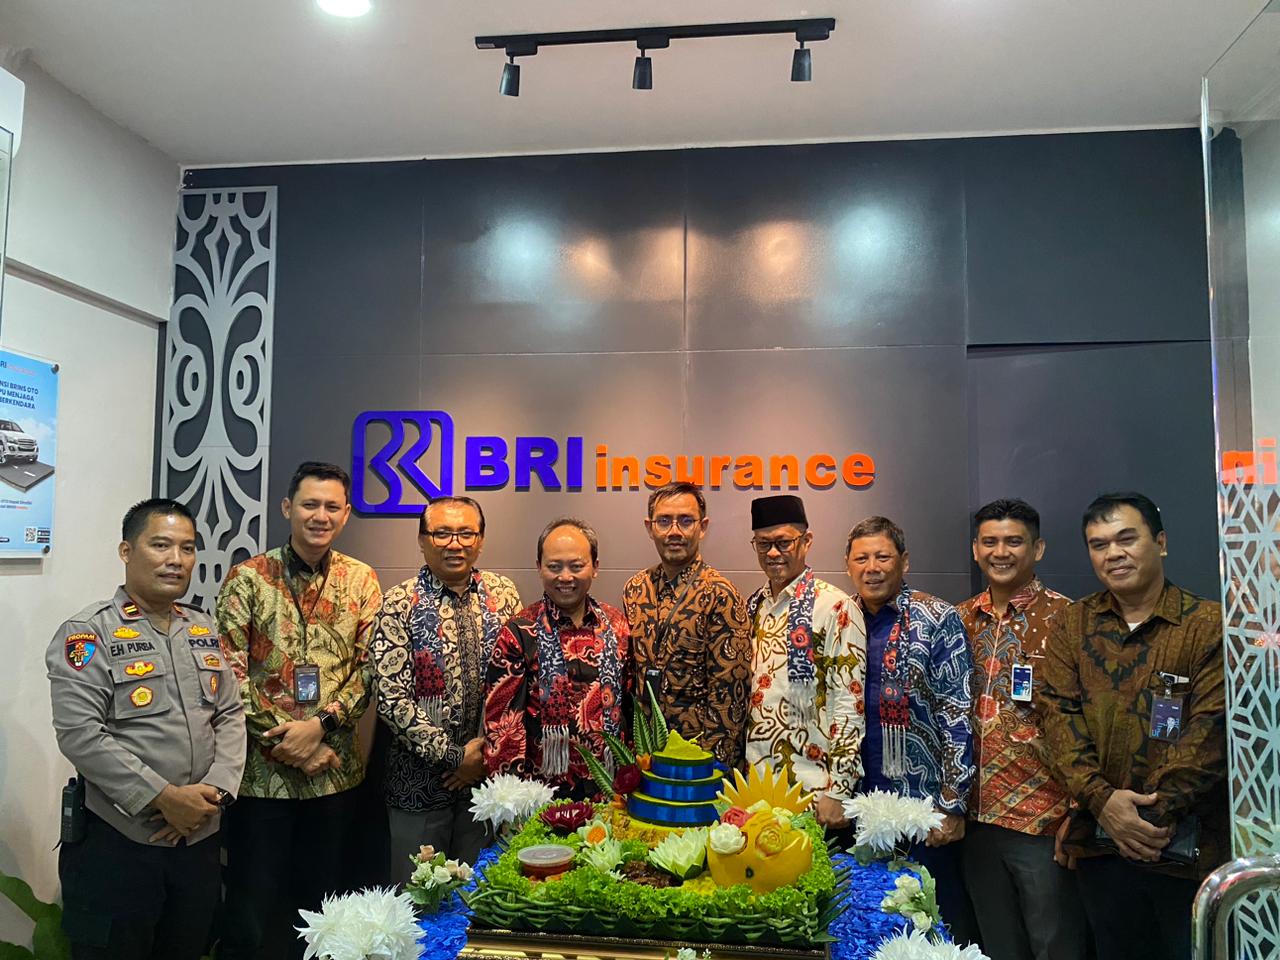 BRI Insurance Hadir di Bengkulu, Tawarkan Perlindungan Aset Lewat Asuransi